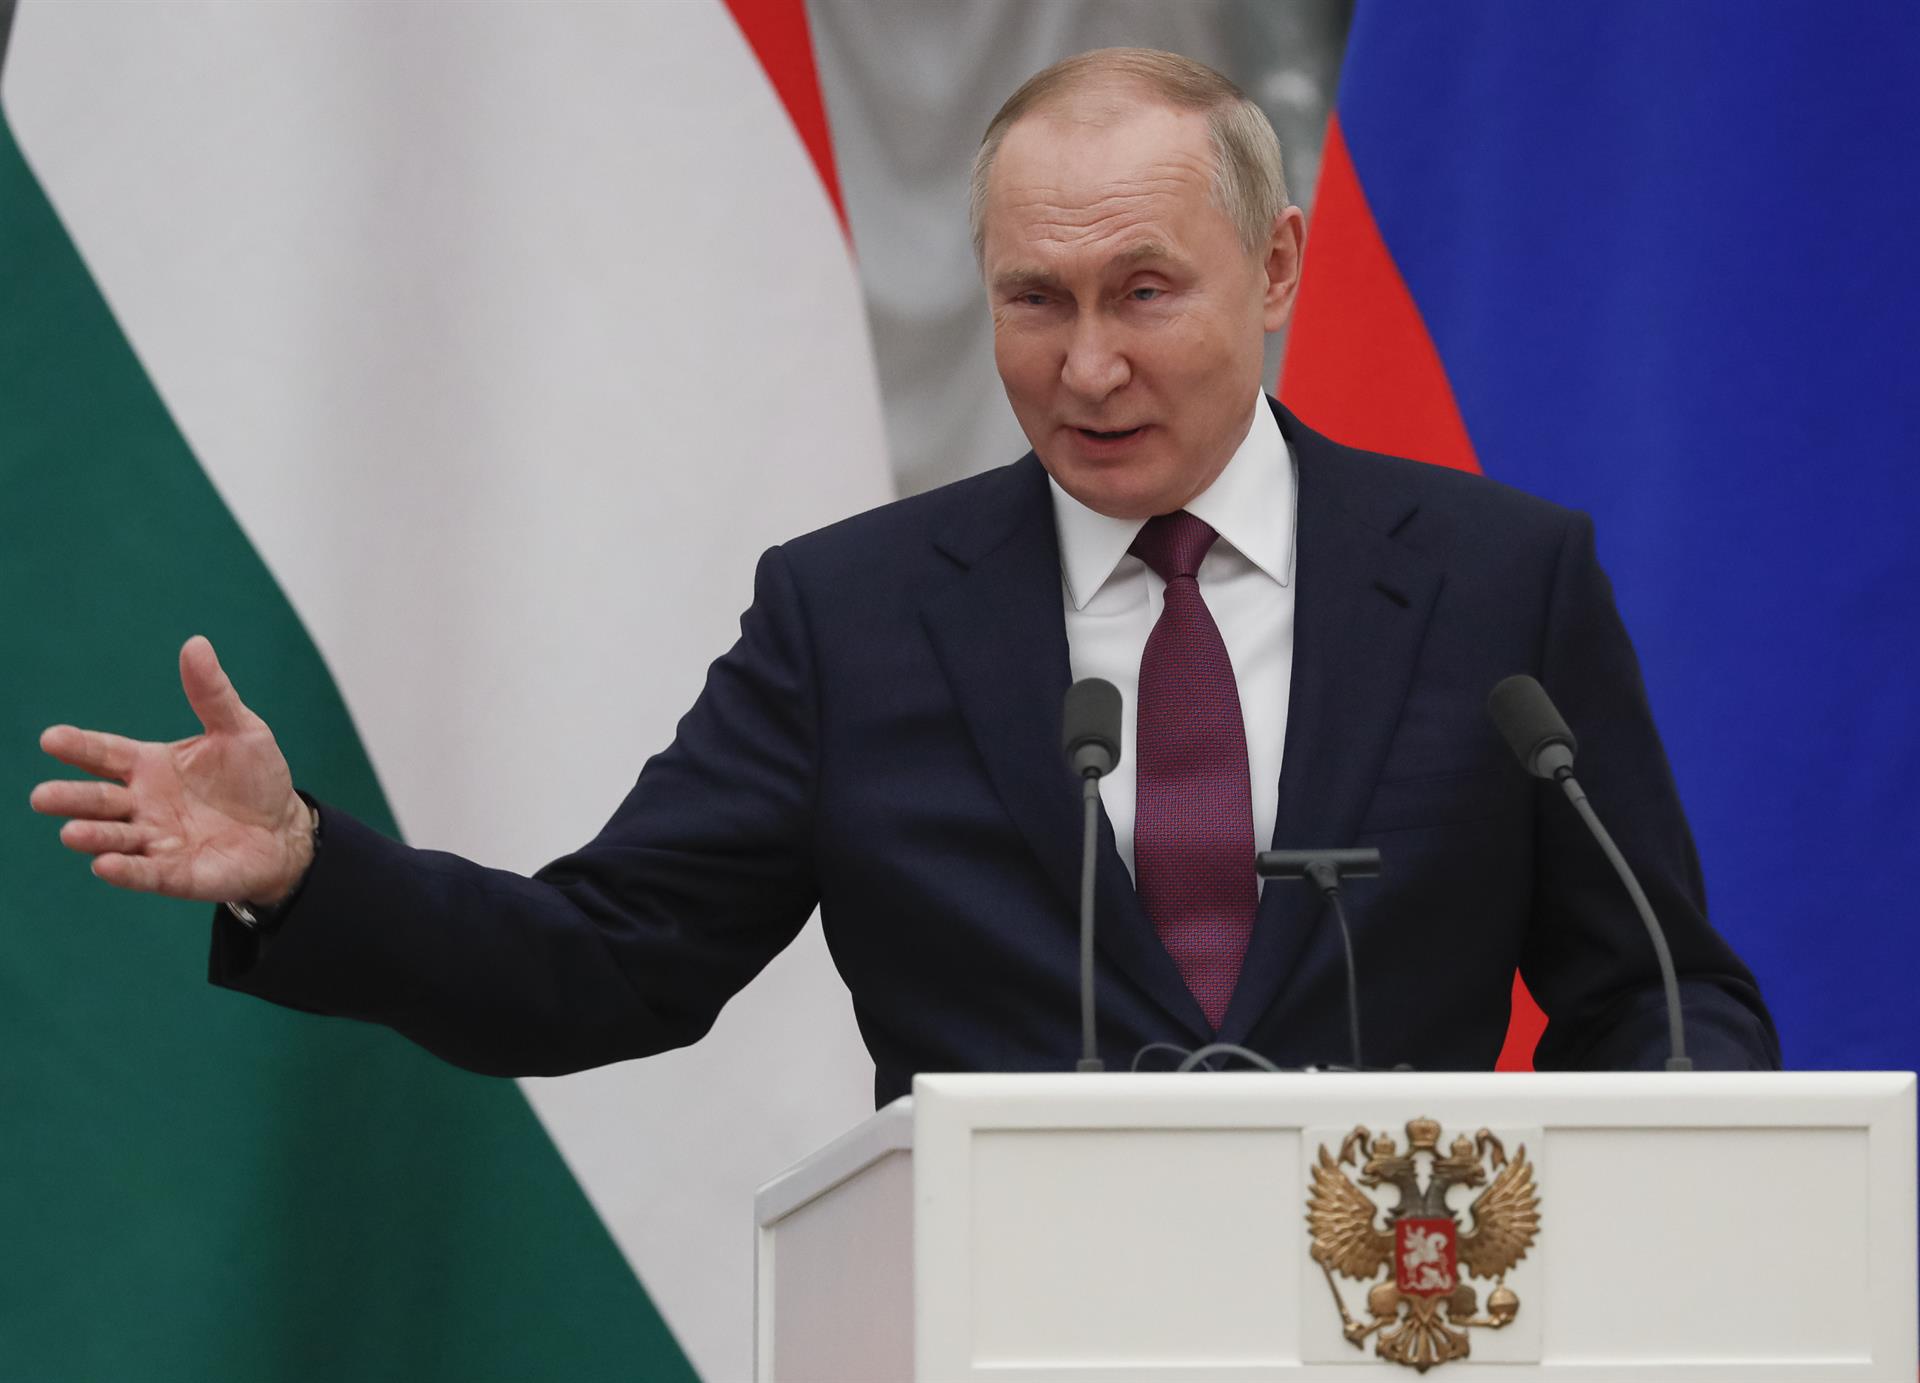 Vladimir Putin, la persona con la peor reputación en la historia de internet